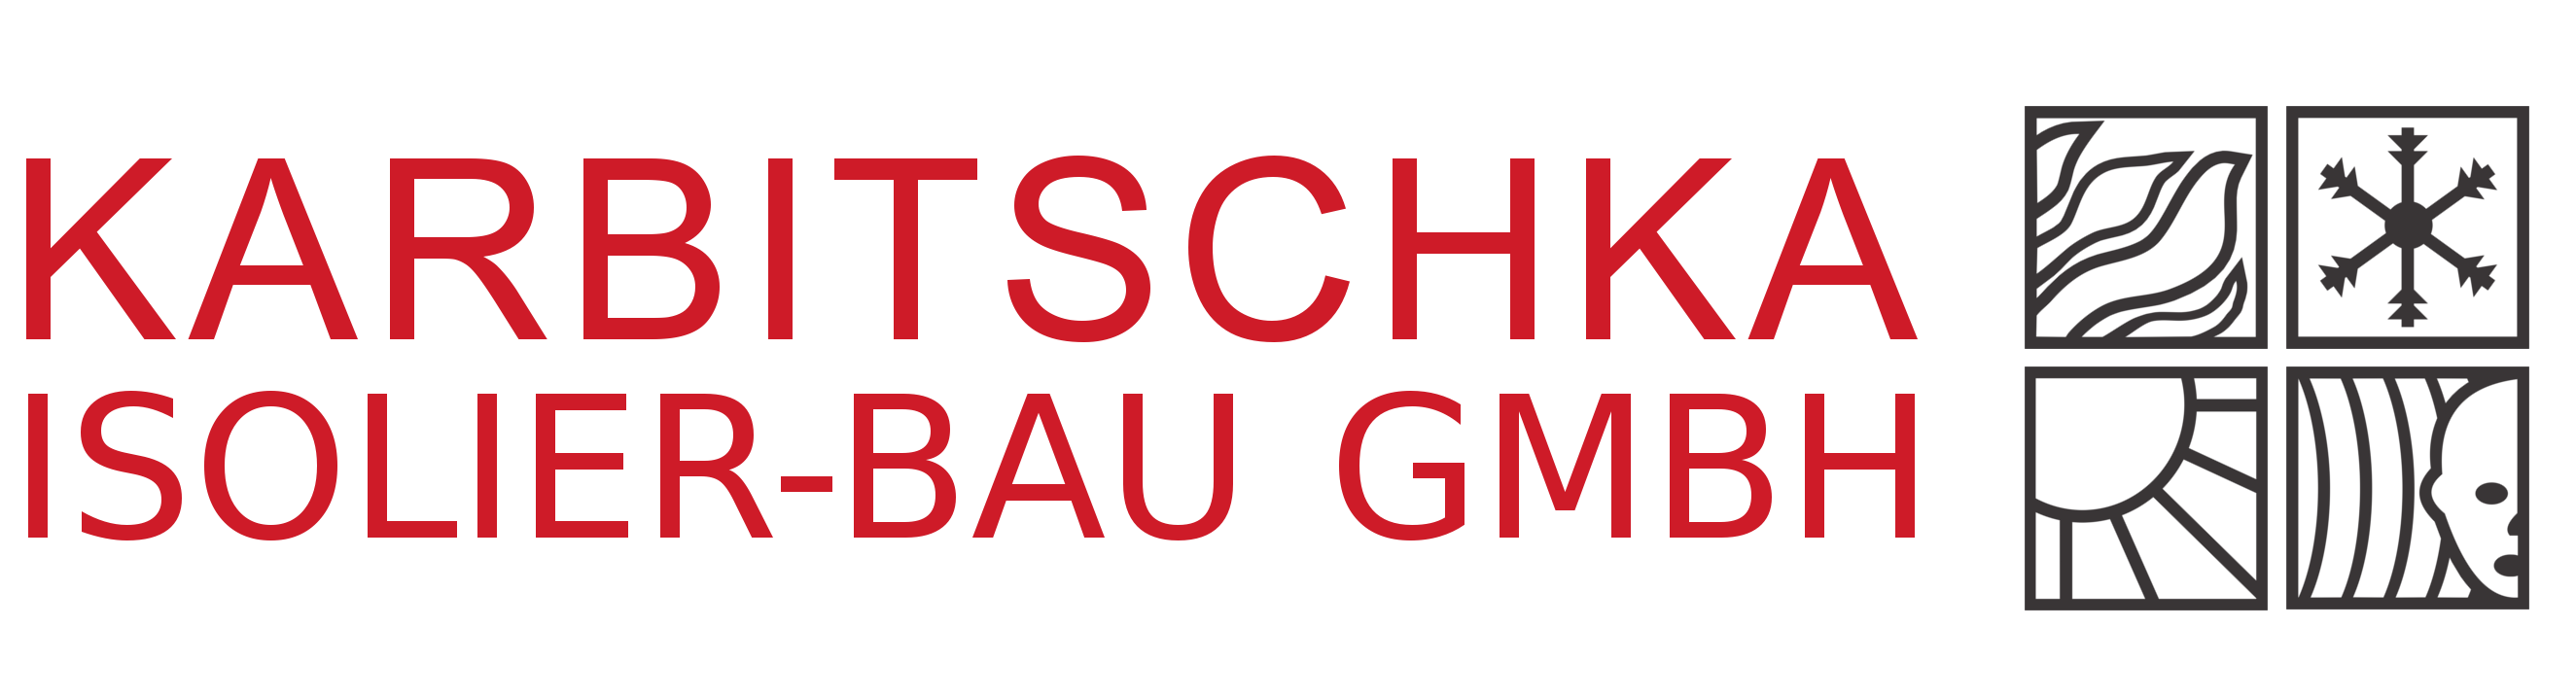 Karbitschka Logo